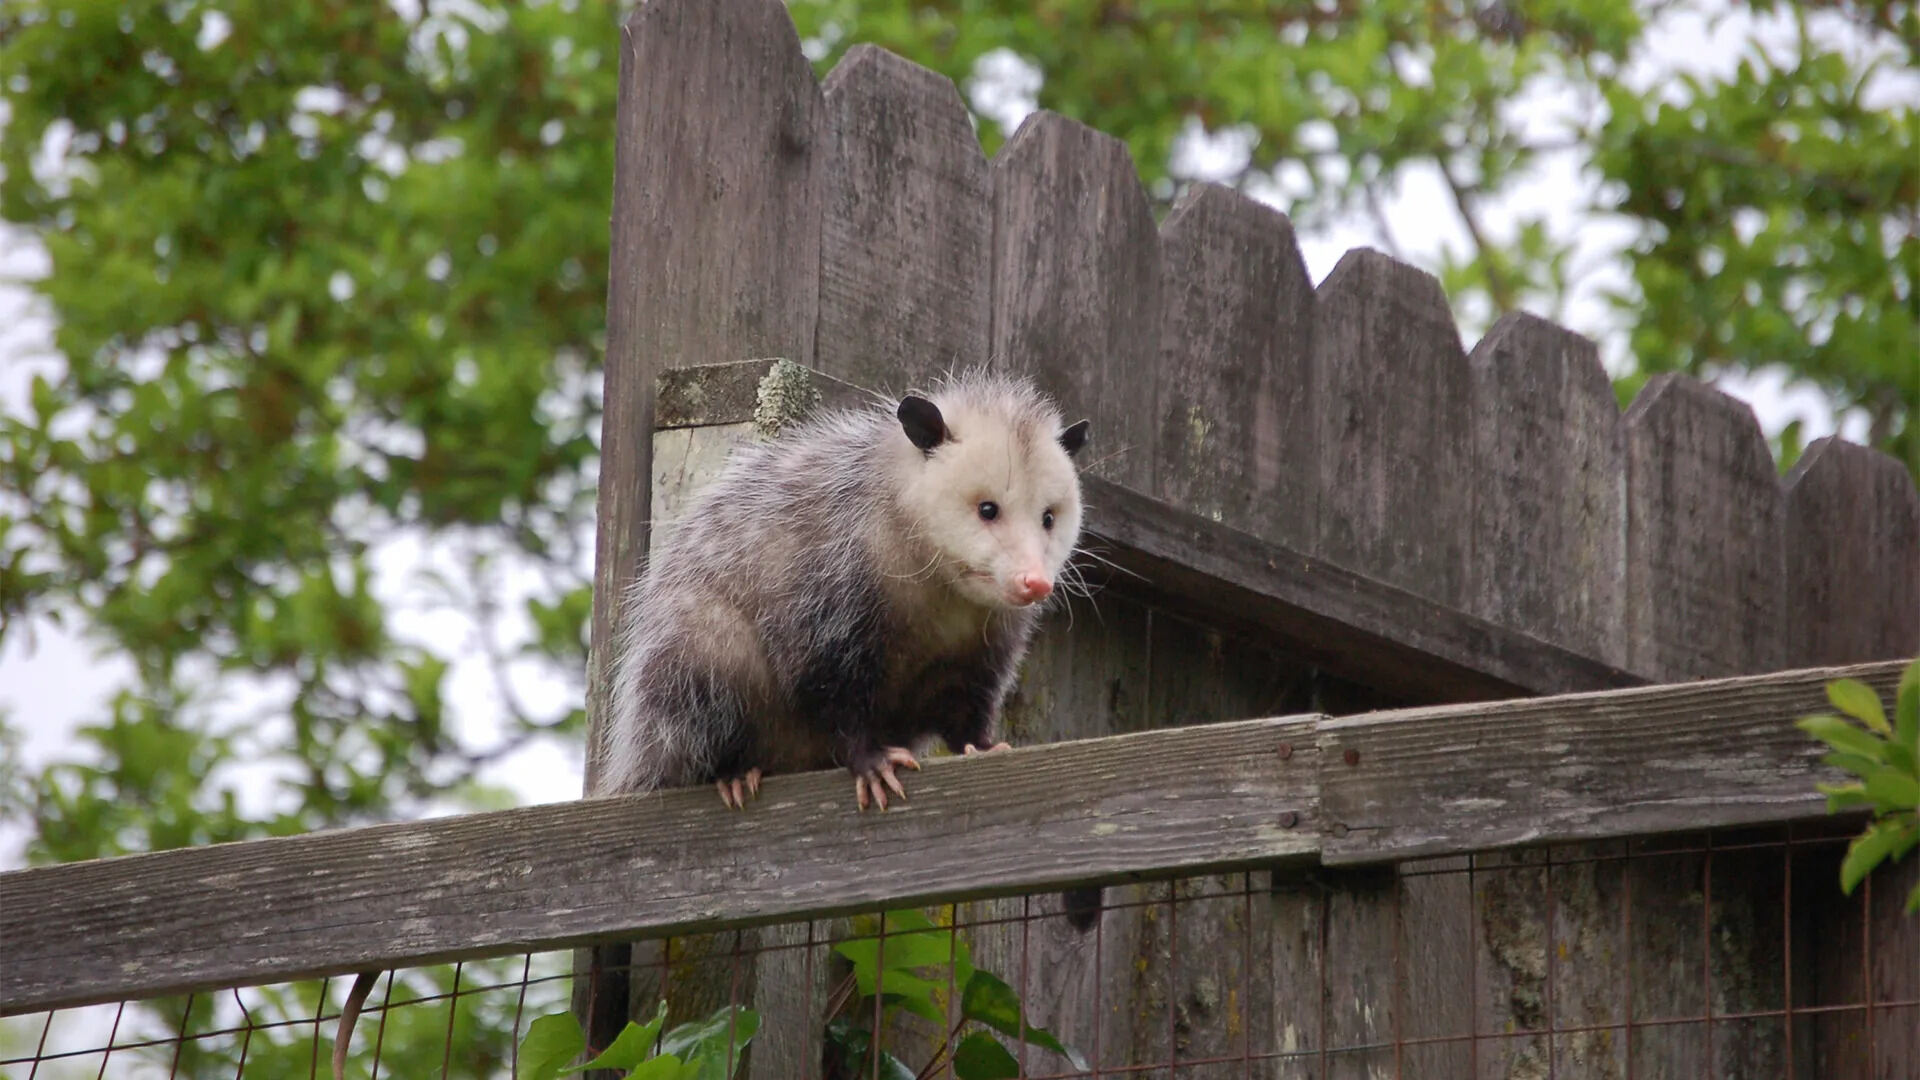 How To Get A Possum Off Your Porch